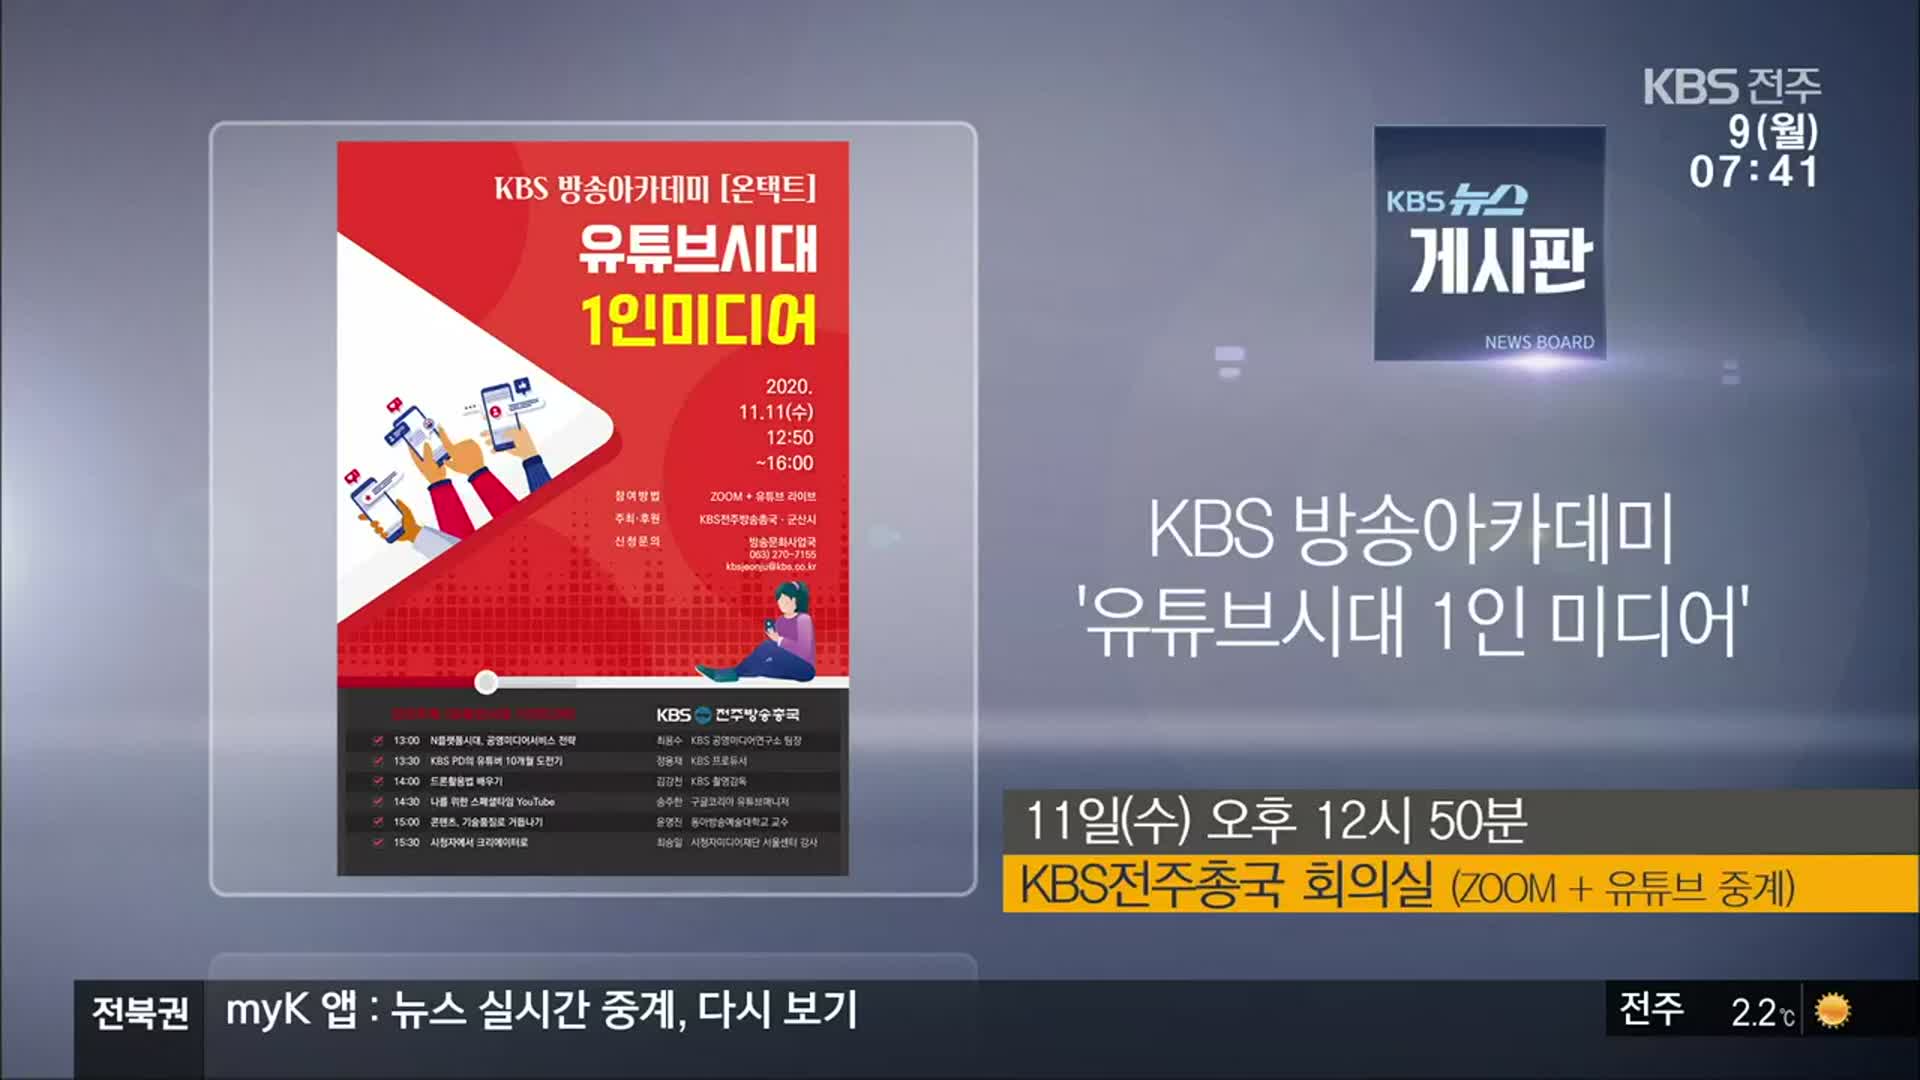 [게시판] KBS 방송아카데미 ‘유튜브시대 1인 미디어’ 외